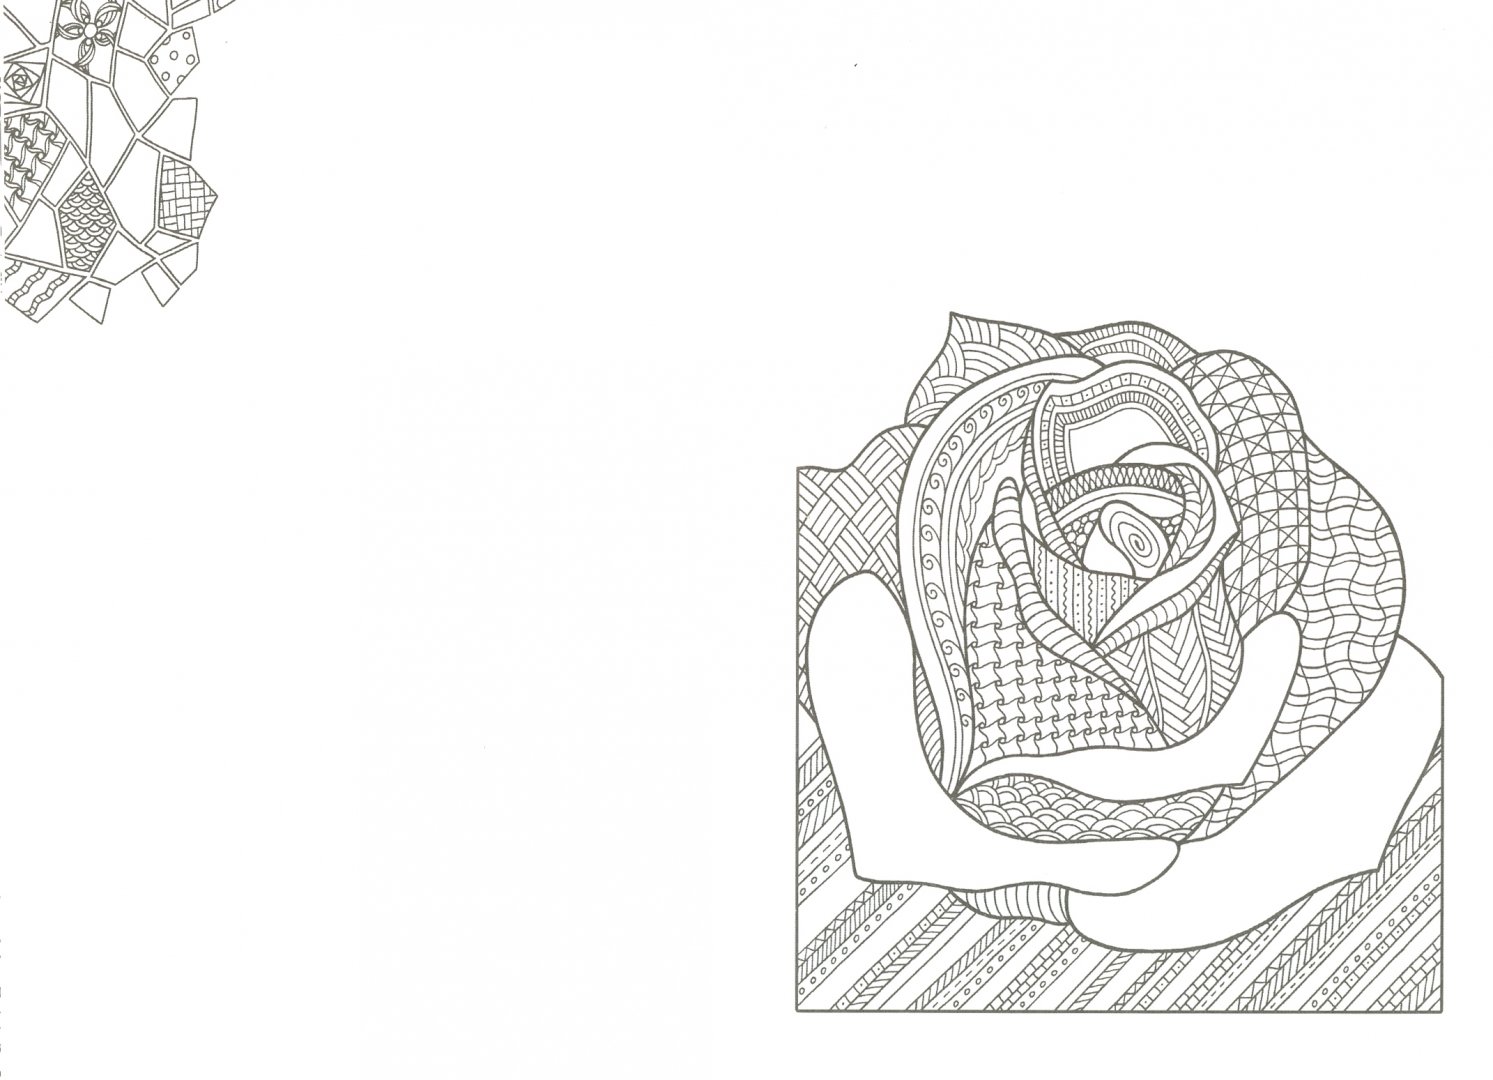 Иллюстрация 1 из 29 для Арт-блокнот. Цветокототерапия - Янина Миронова | Лабиринт - книги. Источник: Лабиринт